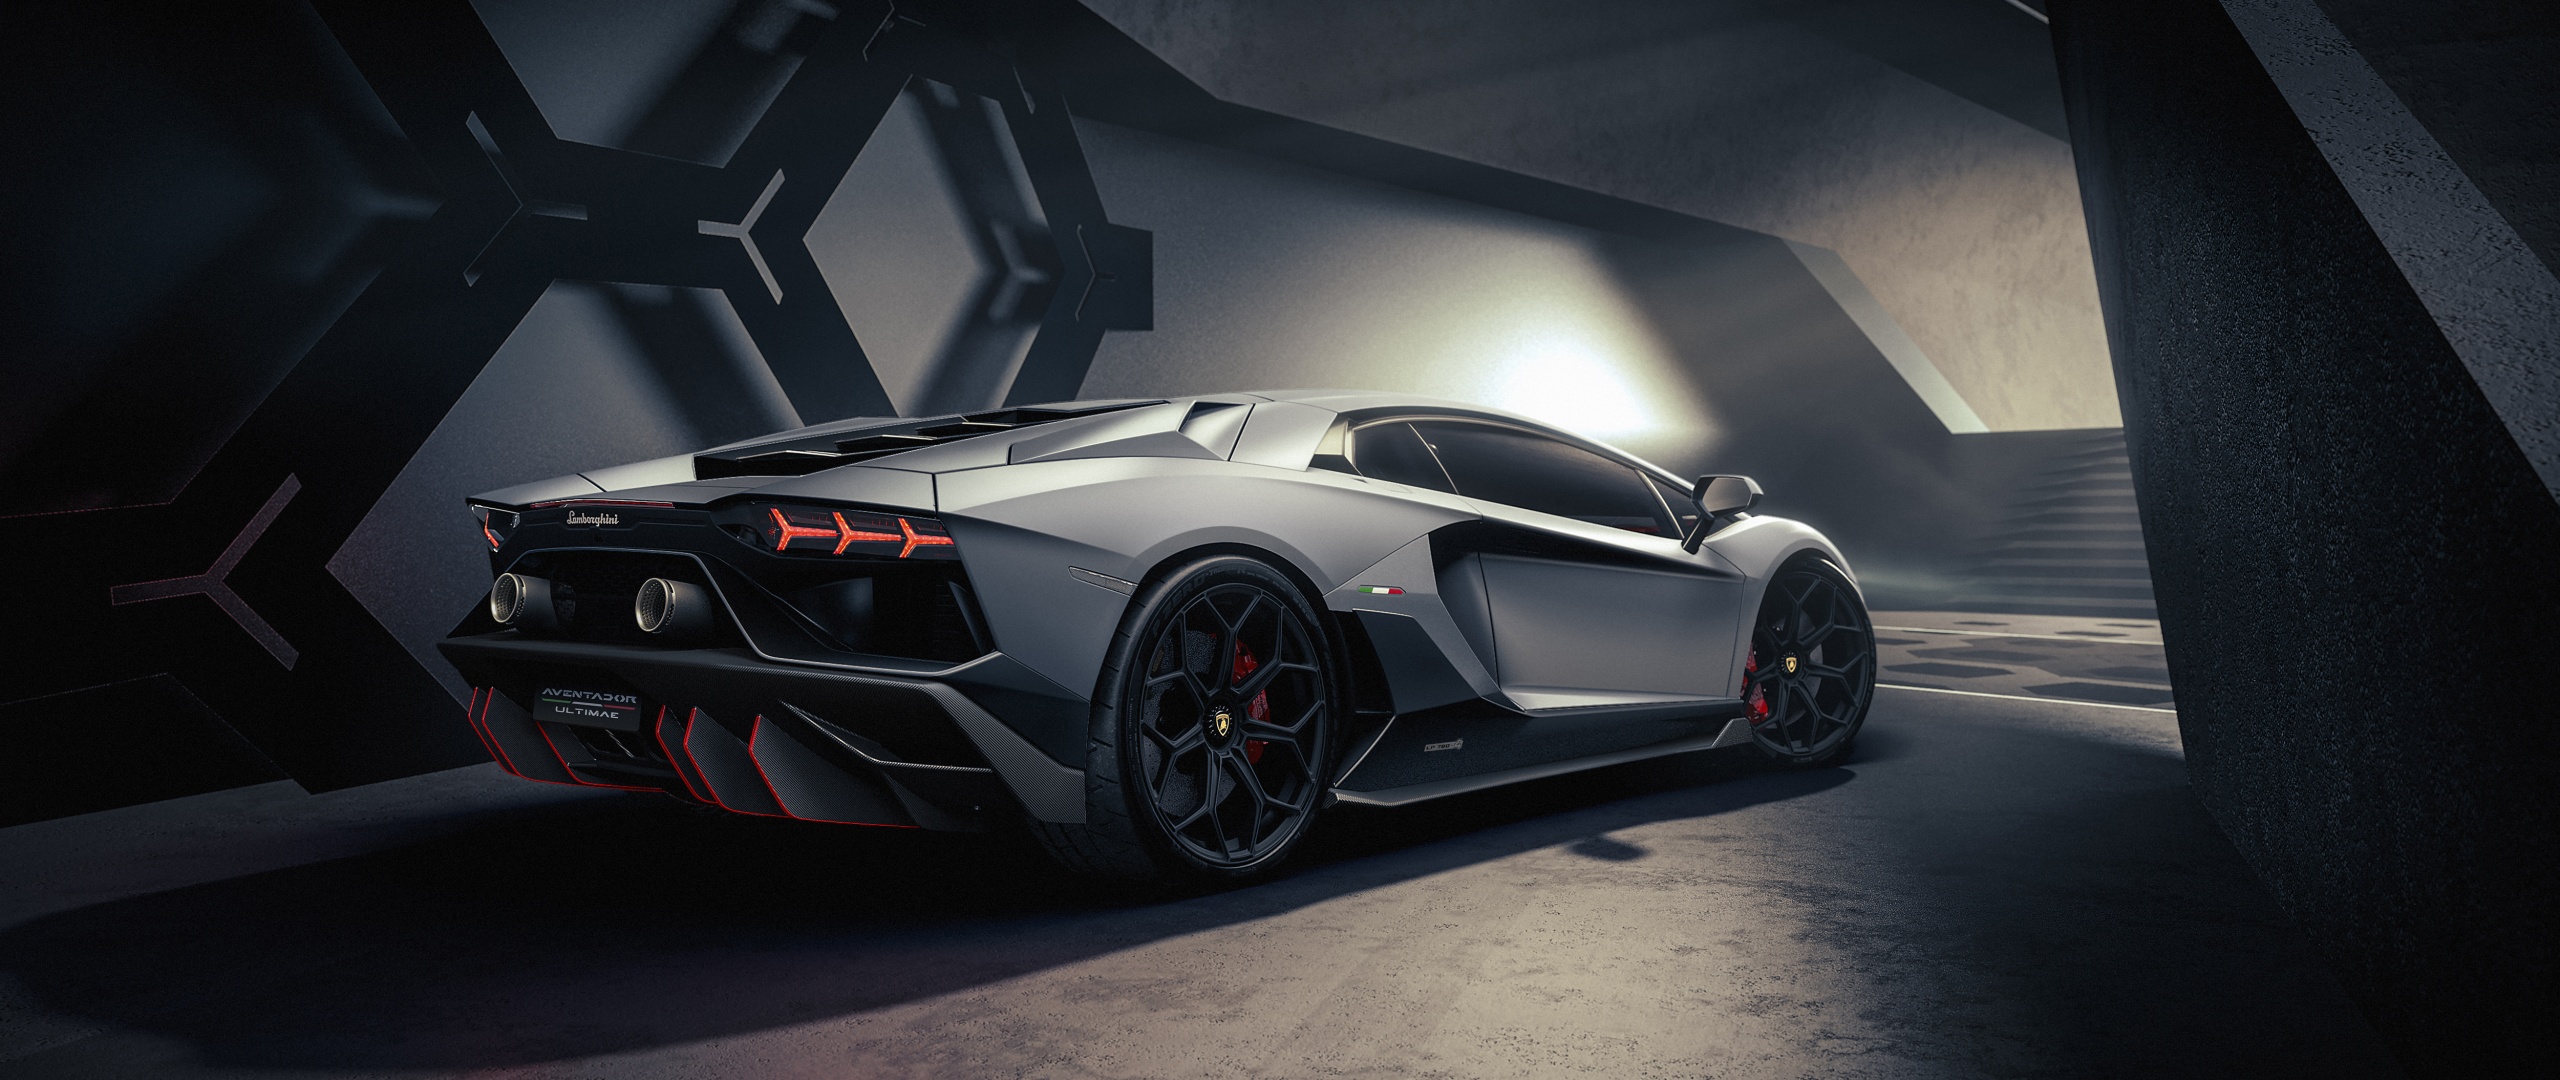 Lamborghini Aventador là một trong những siêu xe cao cấp nhất thế giới. Với thiết kế hiện đại, sang trọng và đầy tính nghệ thuật, chiếc xe này phản ánh sự tinh tế và vẻ đẹp vượt thời gian. Hãy xem hình ảnh của Lamborghini Aventador để trải nghiệm sự tuyệt vời của nó.